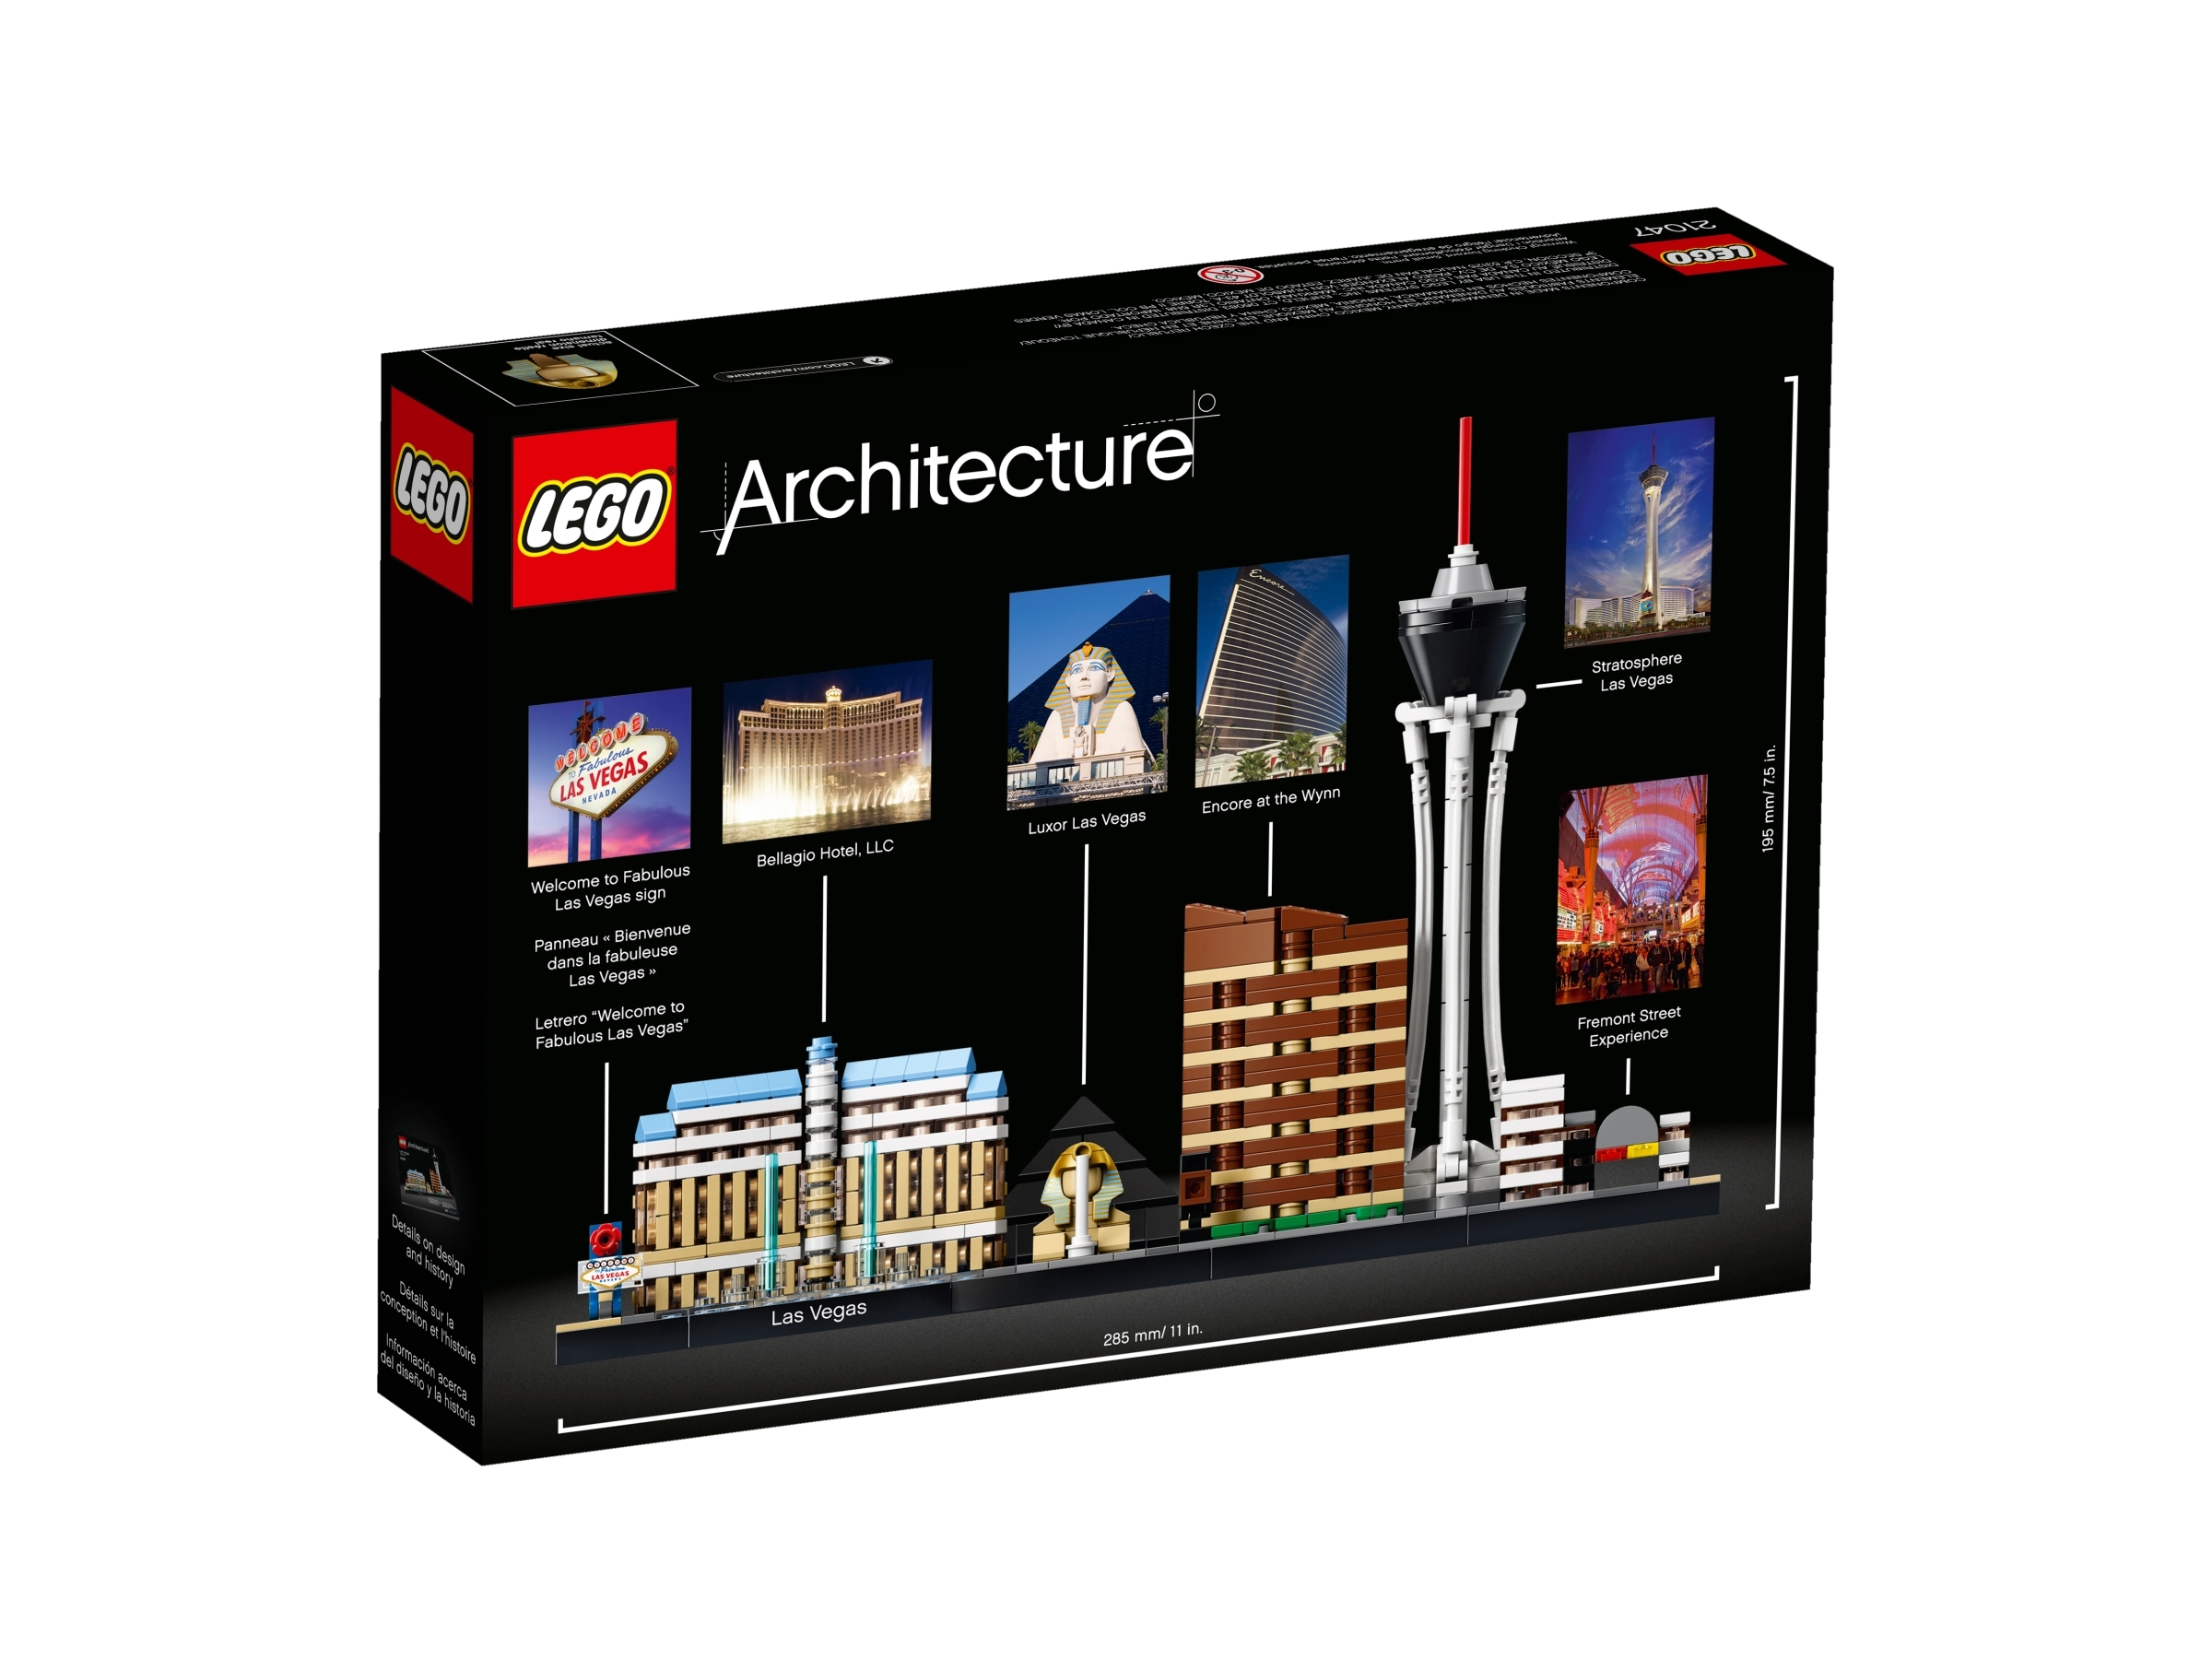 Lego Architecture Set 21047 Las Vegas Review